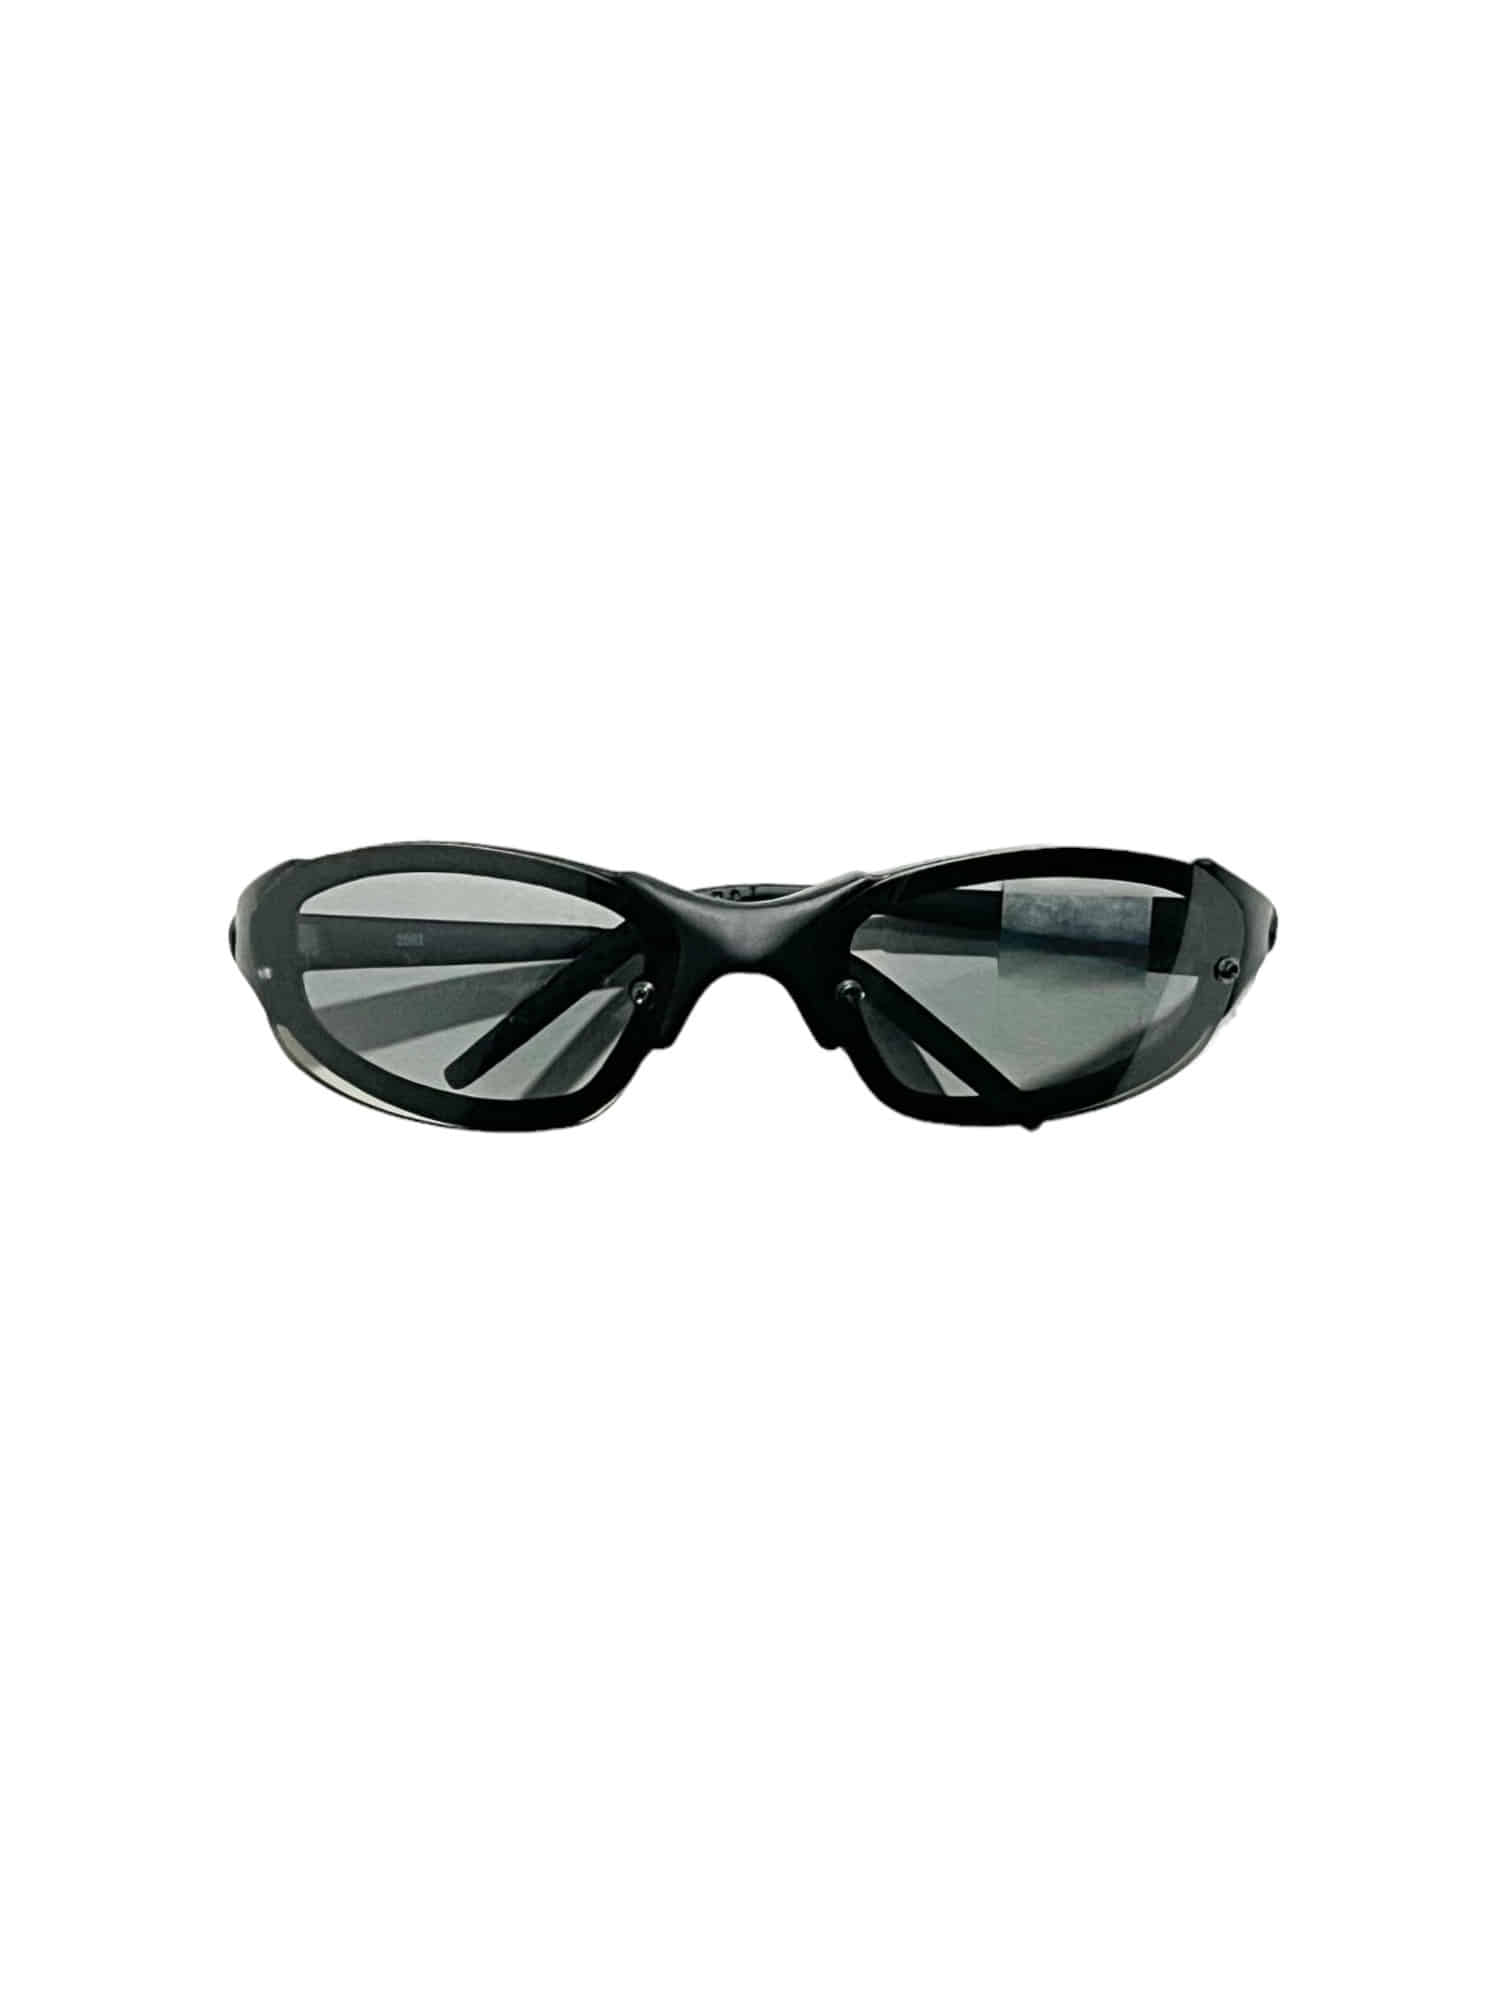 Leisure Frame Vintage Sunglasses JP 3.0